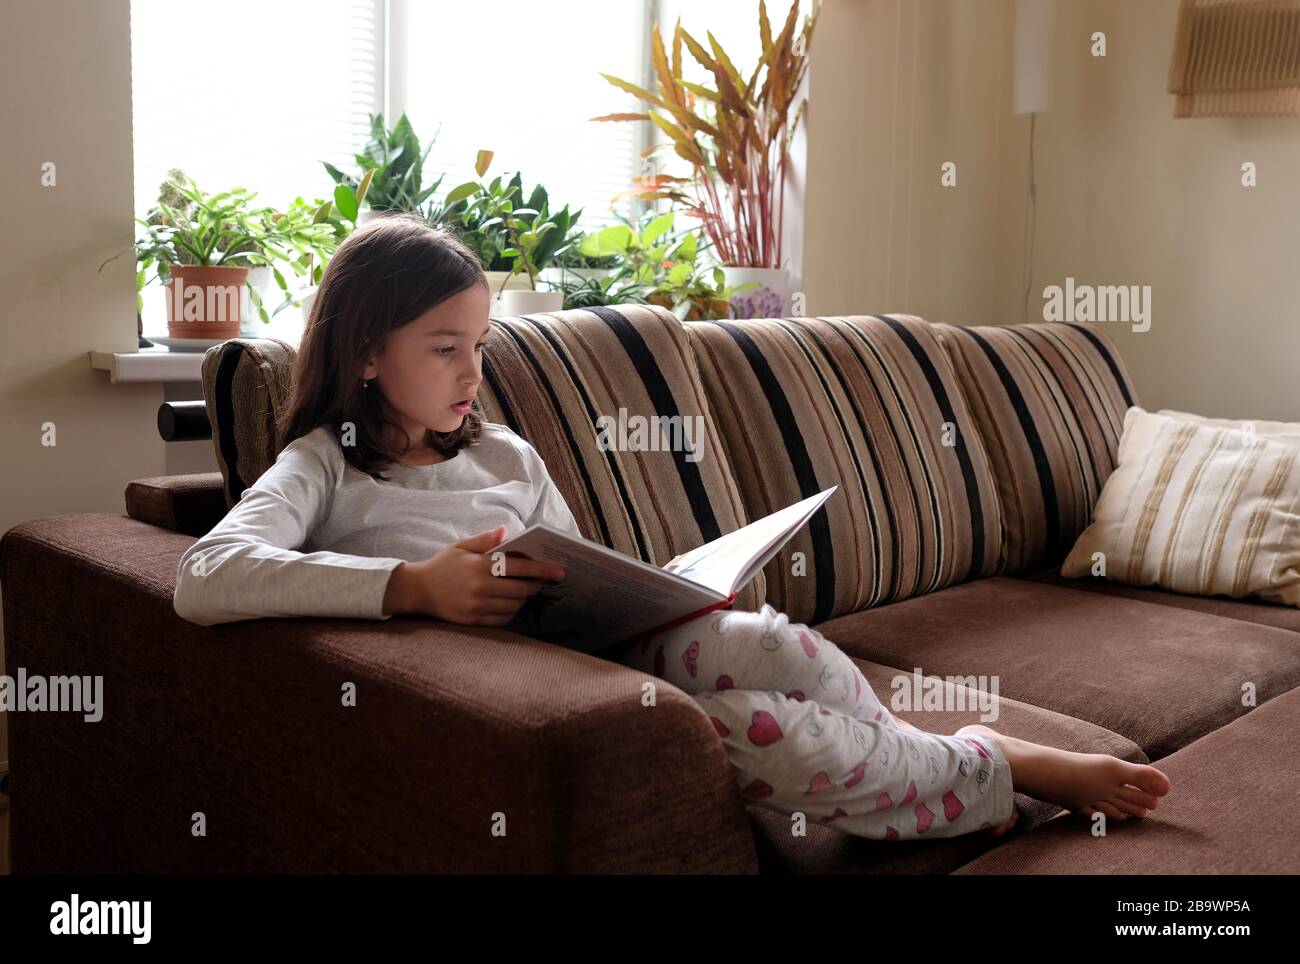 La niña está leyendo un libro en el sofá. Aprendizaje a distancia. Foto de stock